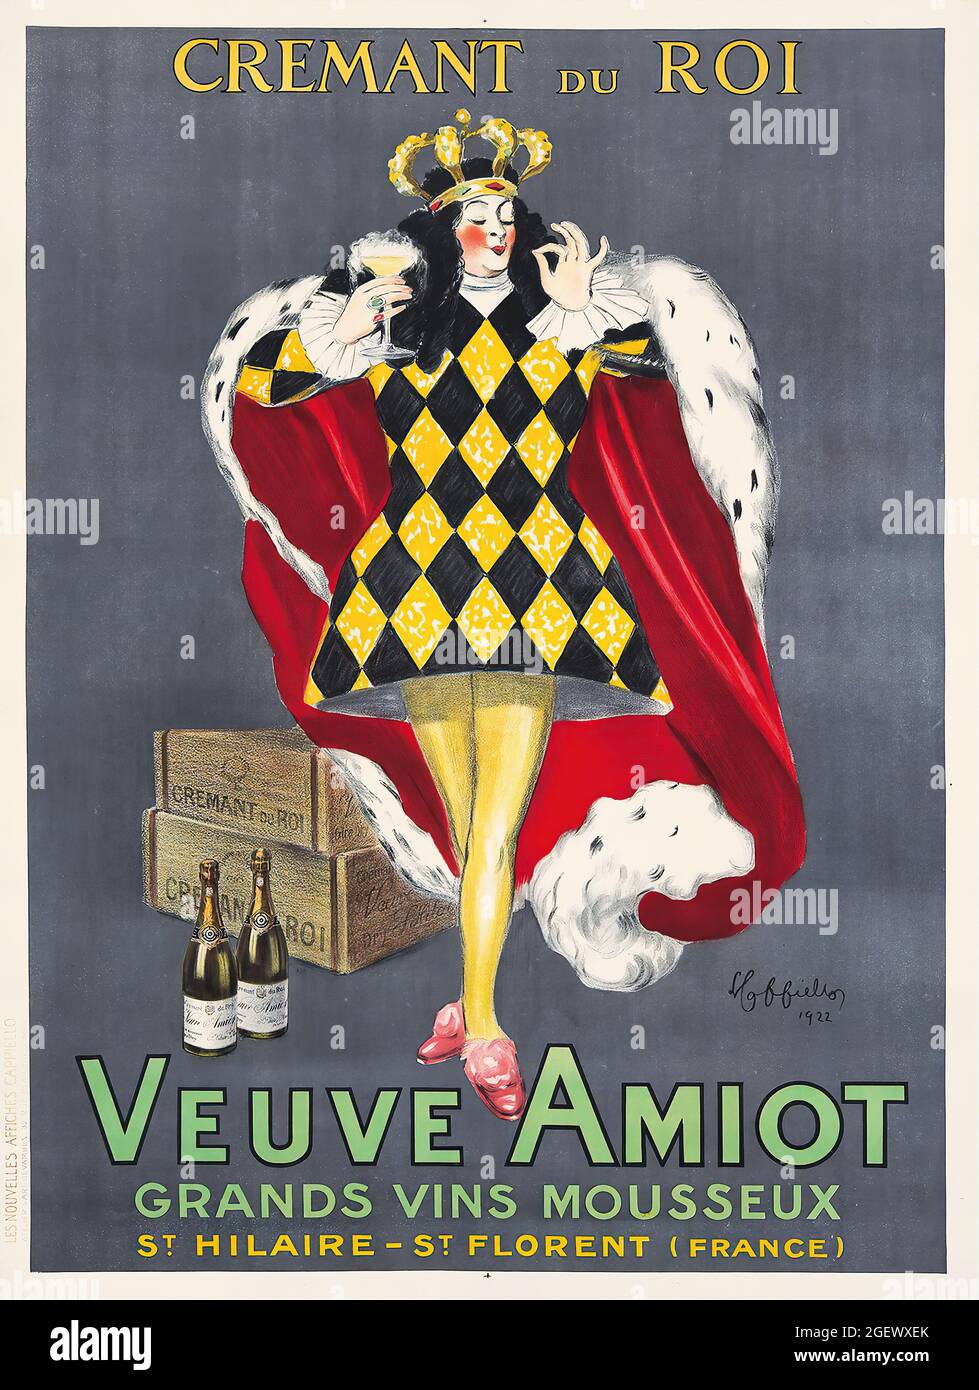 Veuve Amiot, Grands vins Mousseux 1922 - Vintage poster - Leonetto Cappiello. Alcohol advertisement poster. Stock Photo